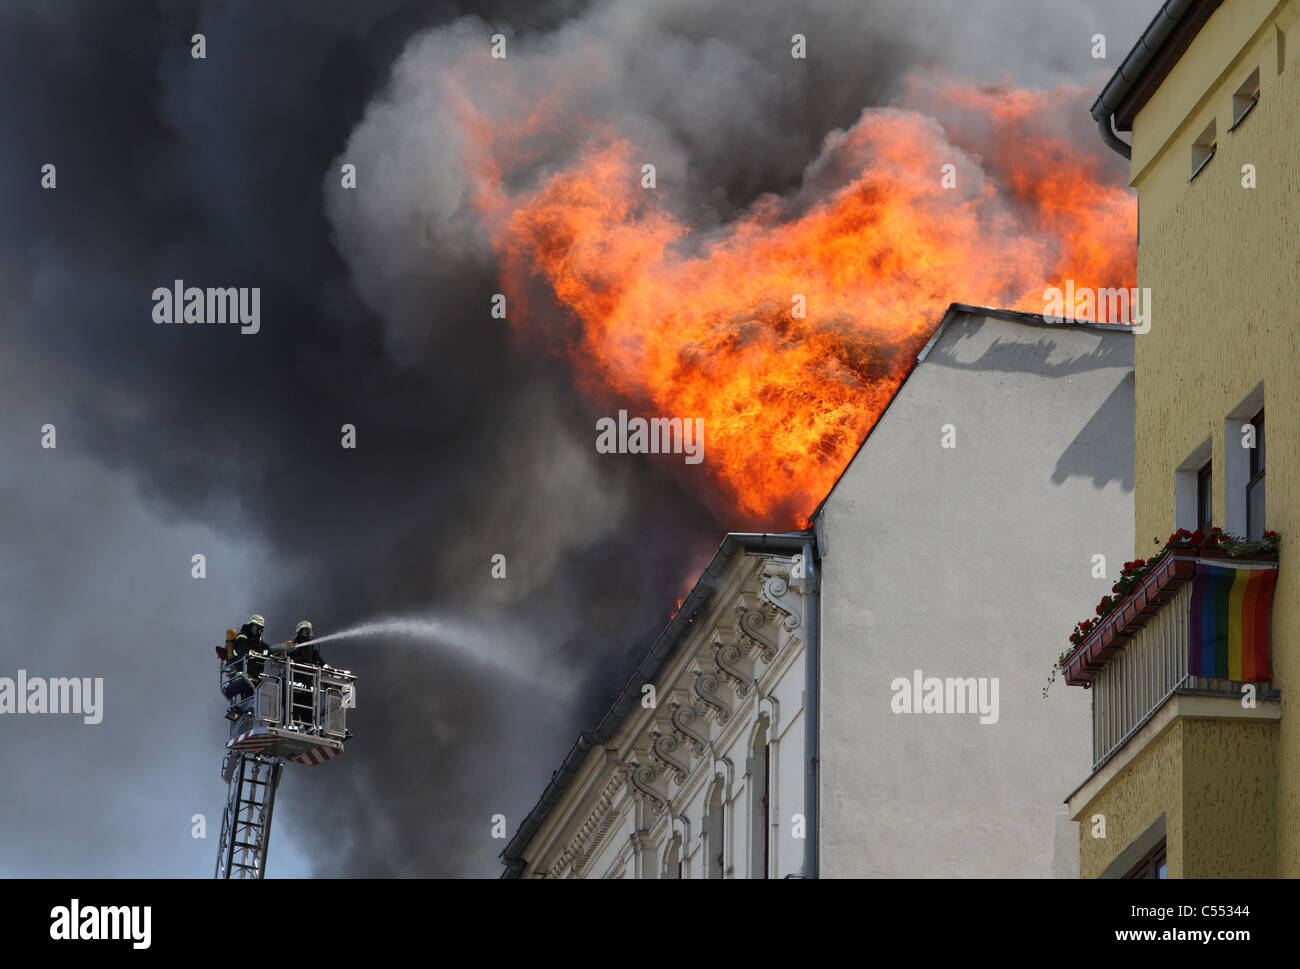 Vigili del fuoco estinguere un incendio in una casa in fiamme, Berlino, Germania Foto Stock